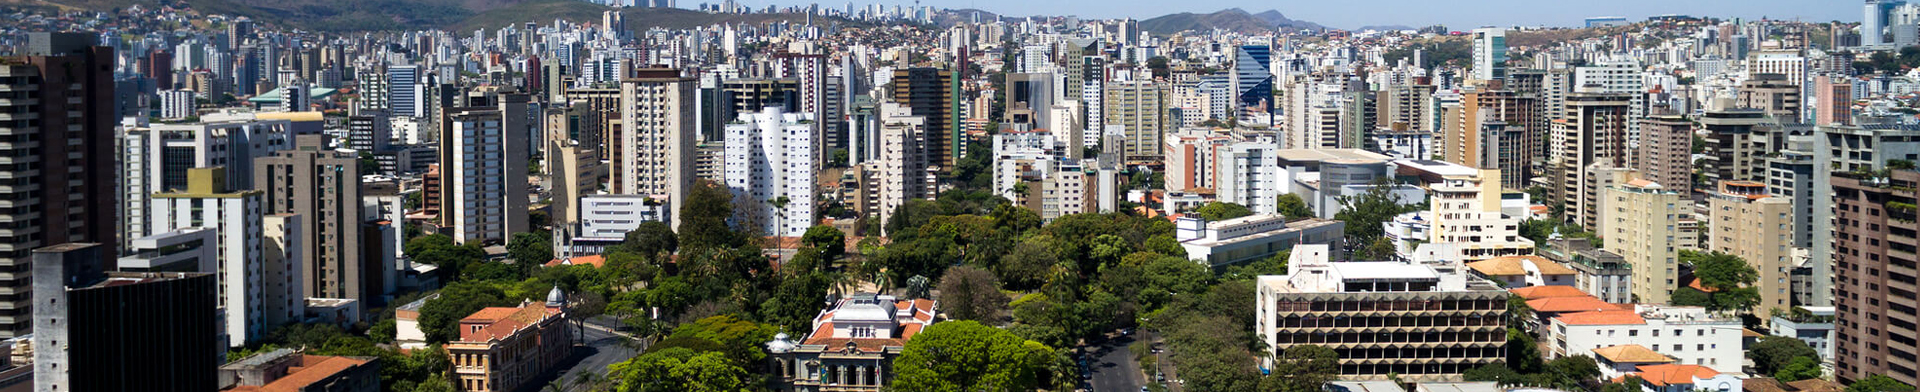 morar na Região Metropolitana de Belo Horizonte